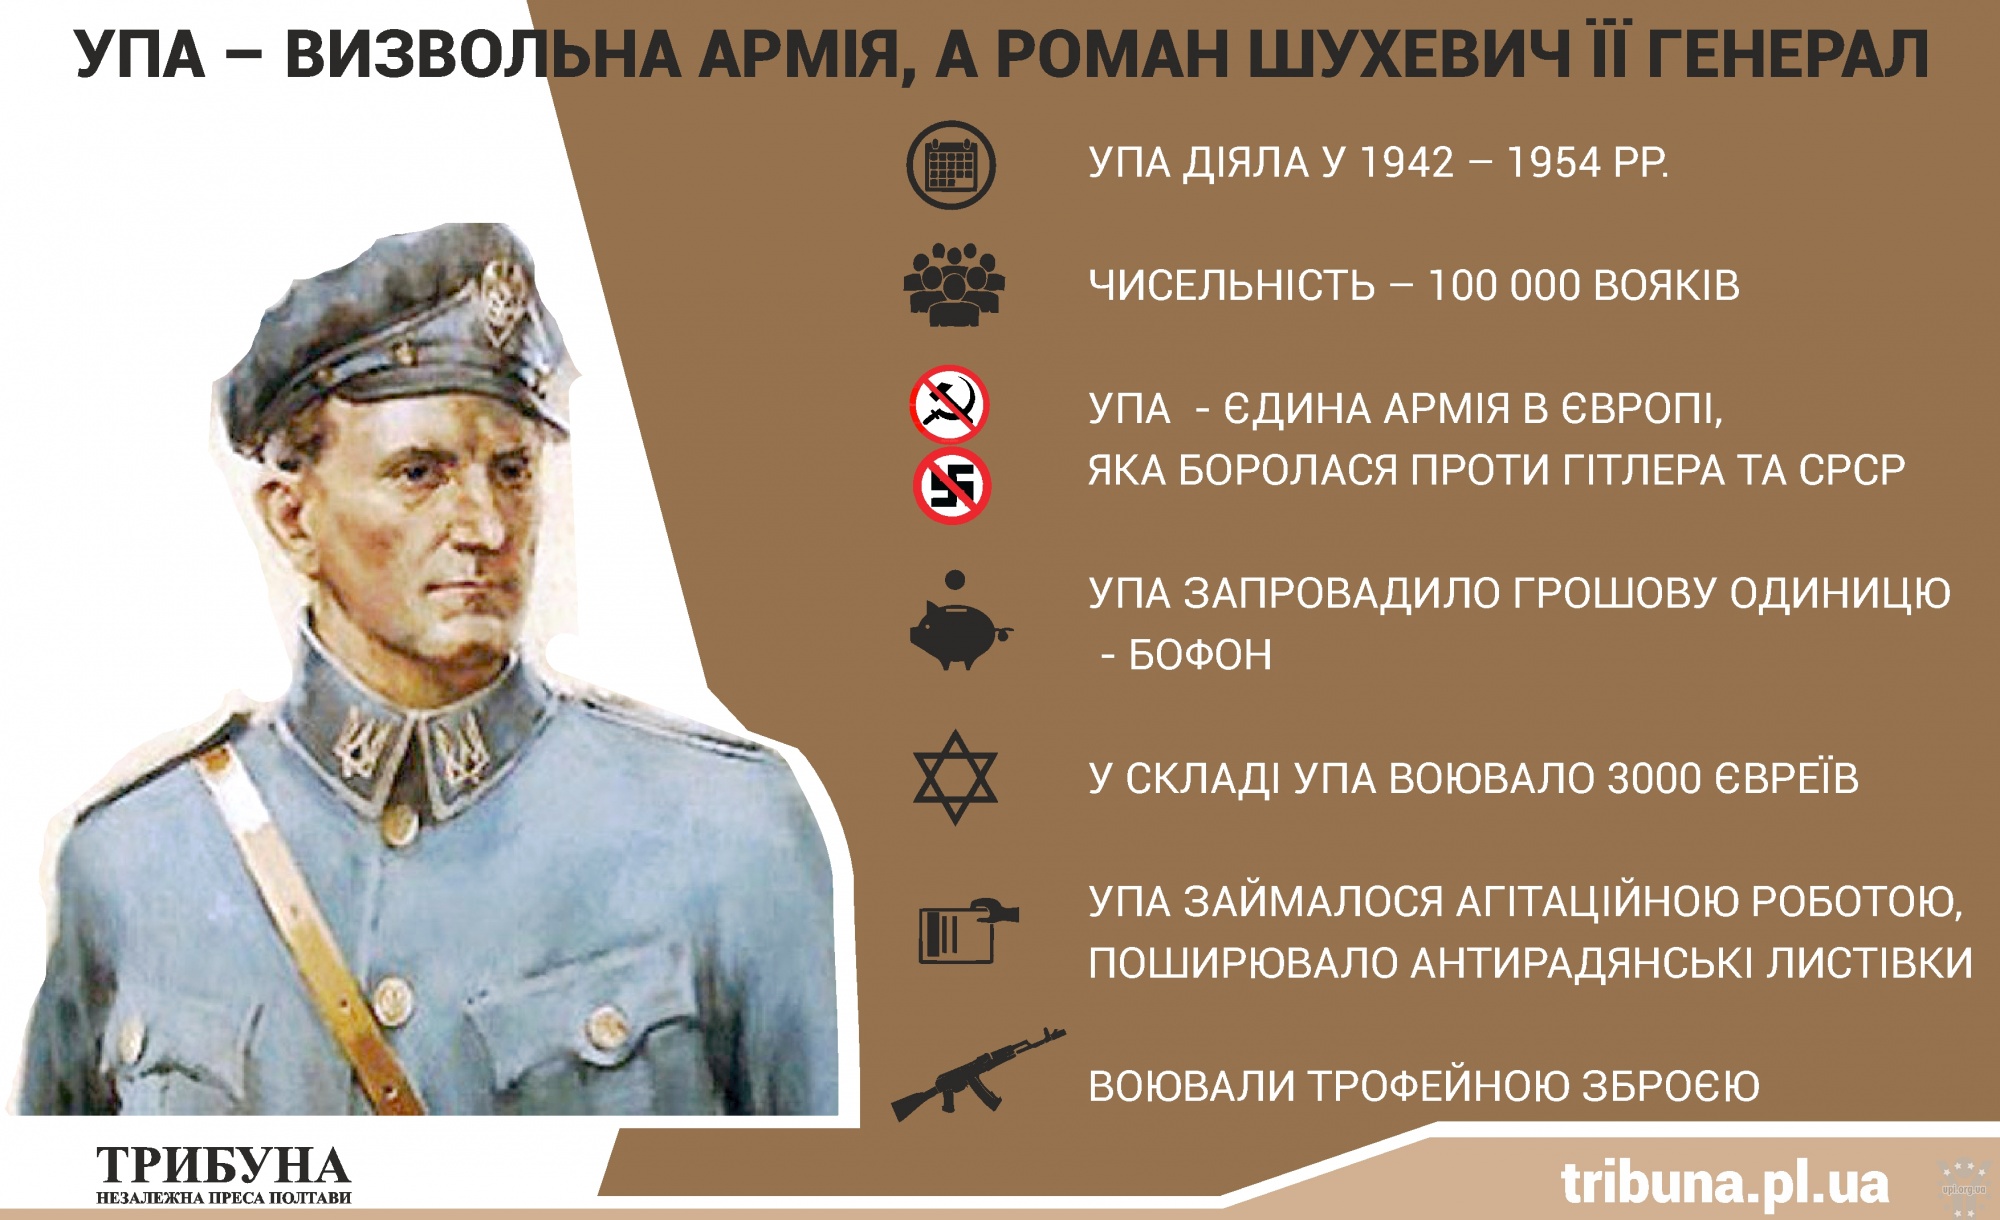 30 червня – 110 років з дня народження Романа Шухевича (1907-1950), головнокомандувача УПА